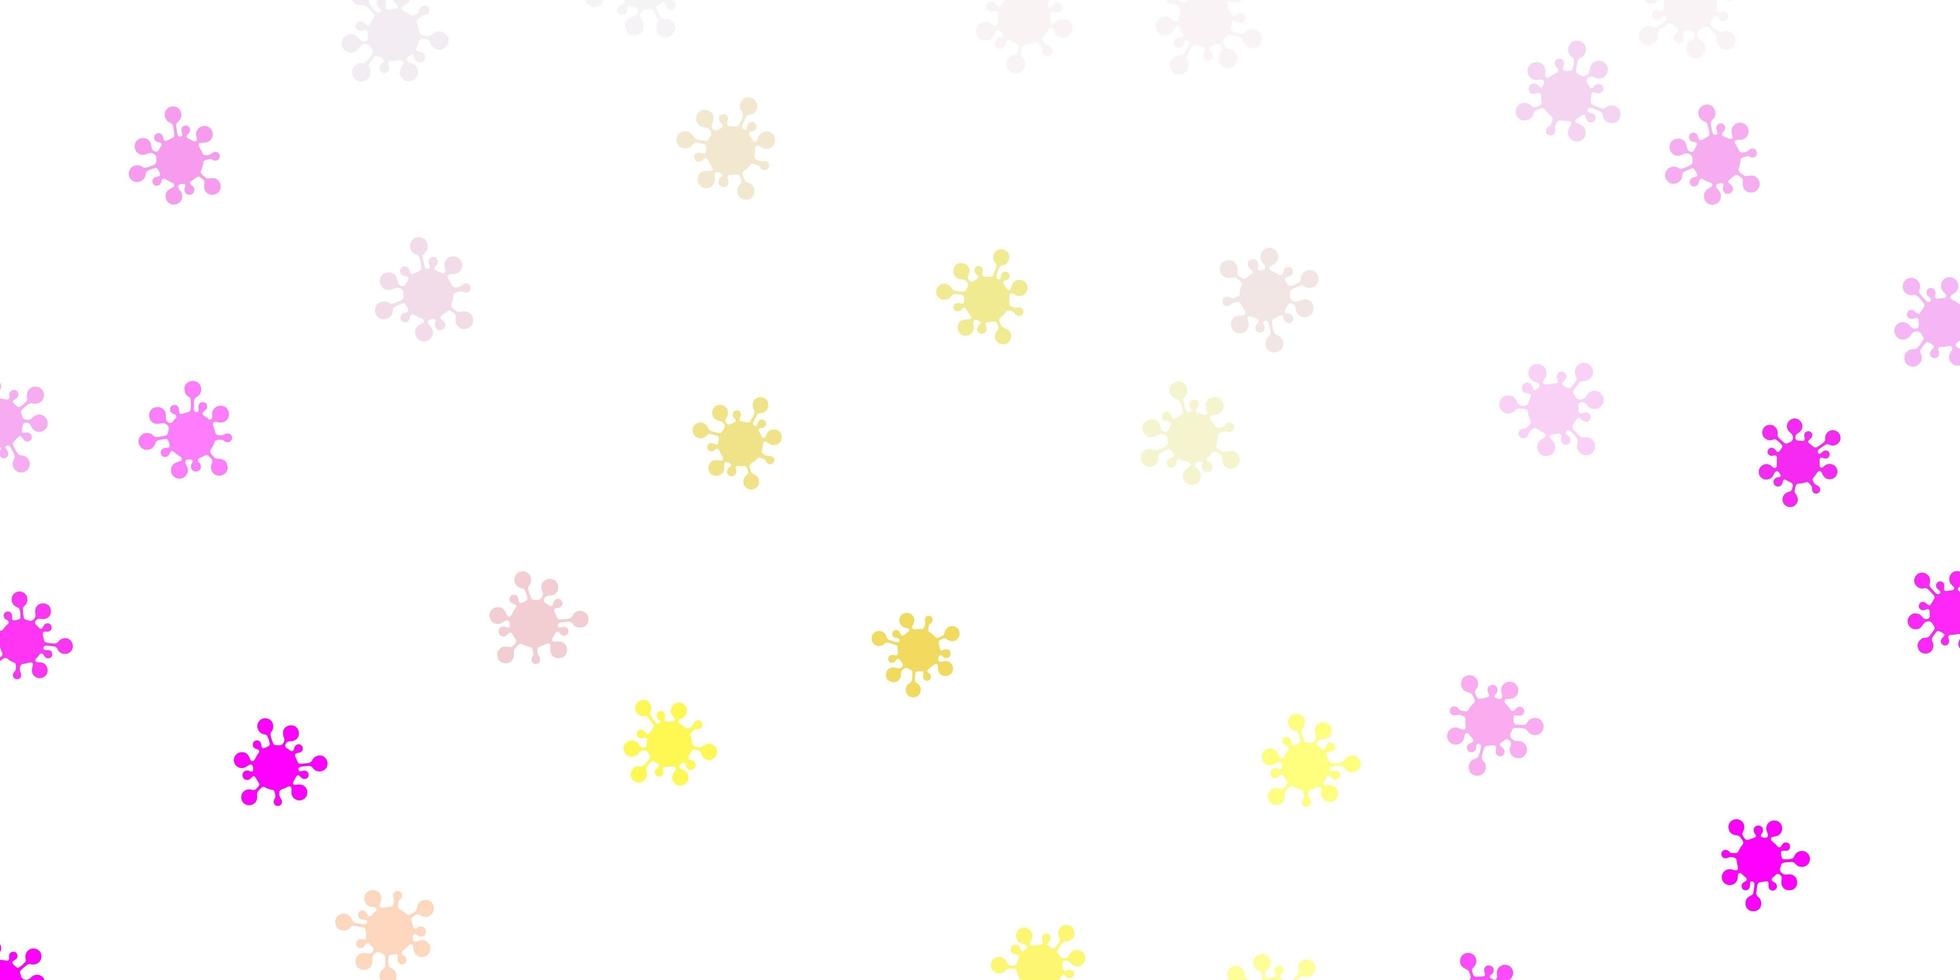 sfondo vettoriale rosa chiaro, giallo con simboli di virus